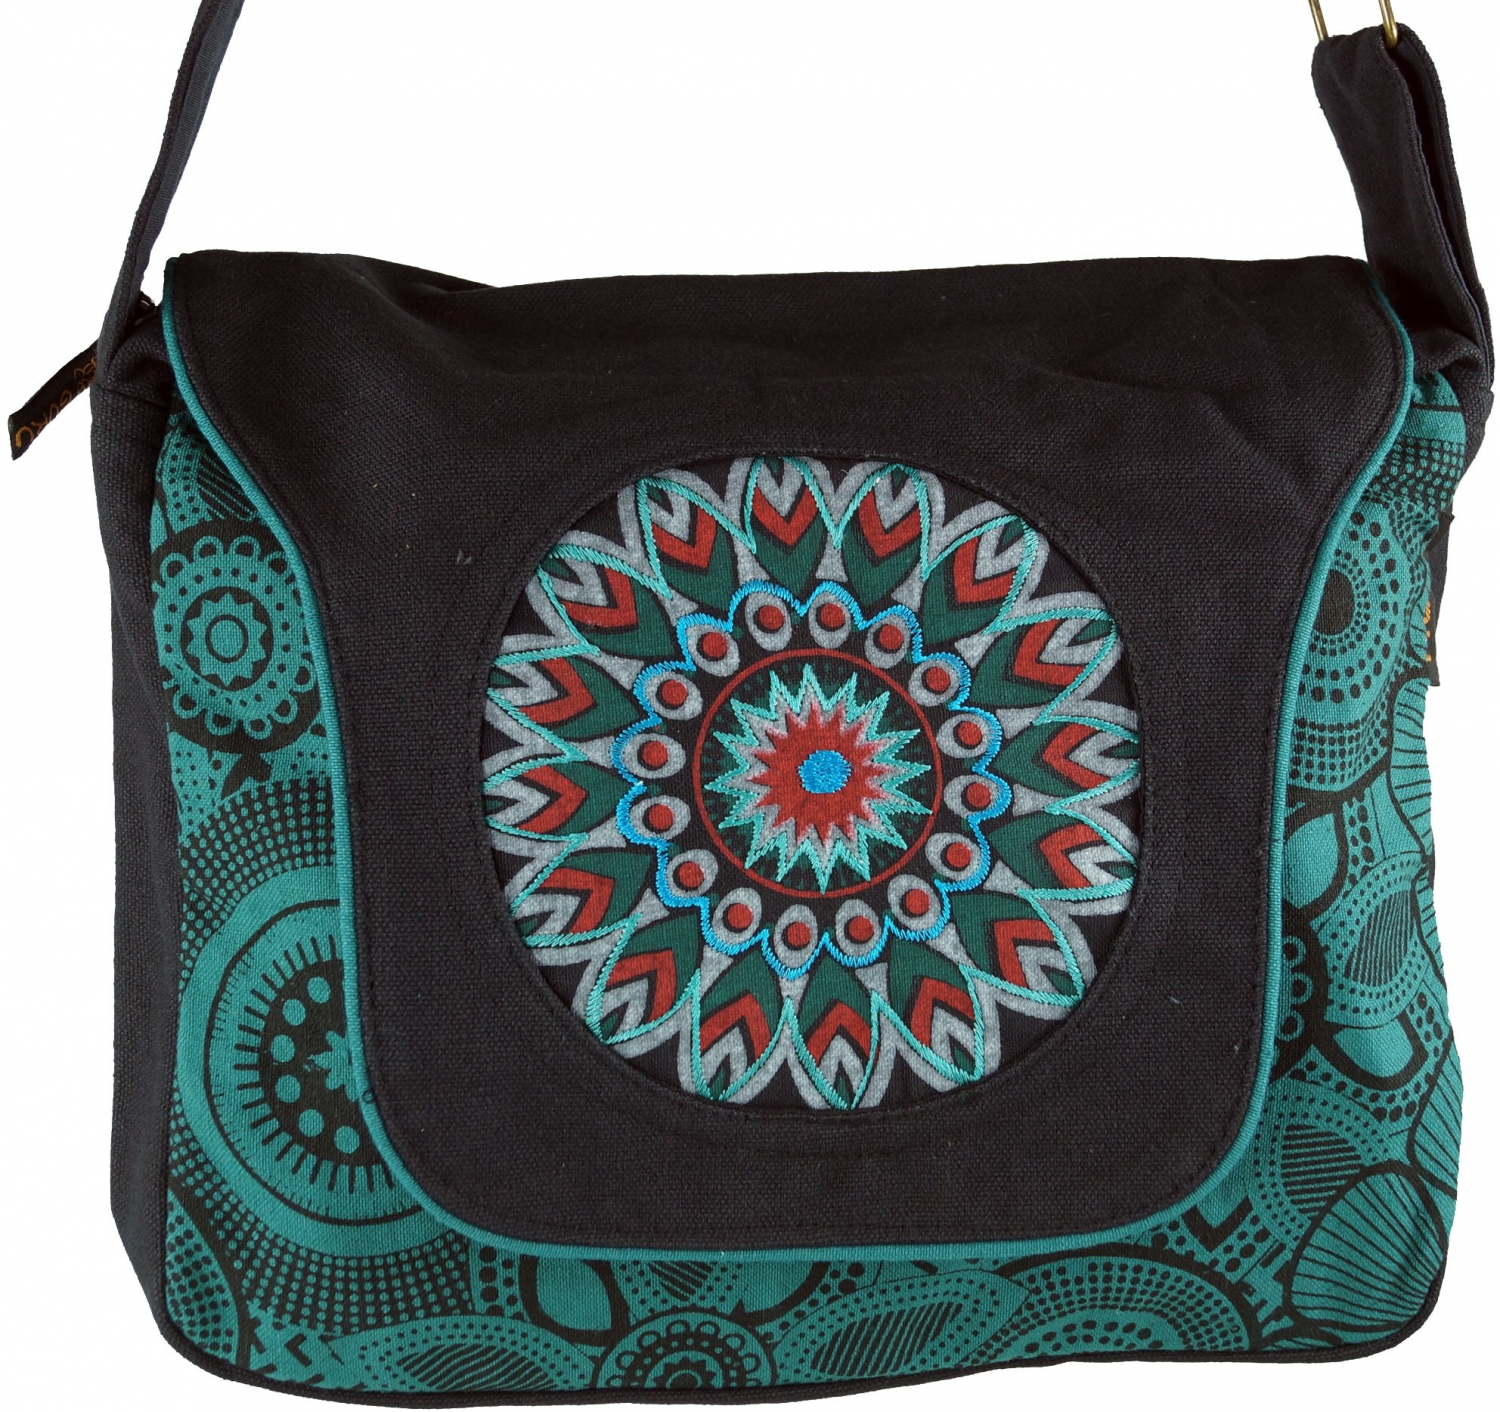 Schultertasche, Hippie Tasche, Goa Tasche, Umhängetasche, Handtasche -  schwarz/blau